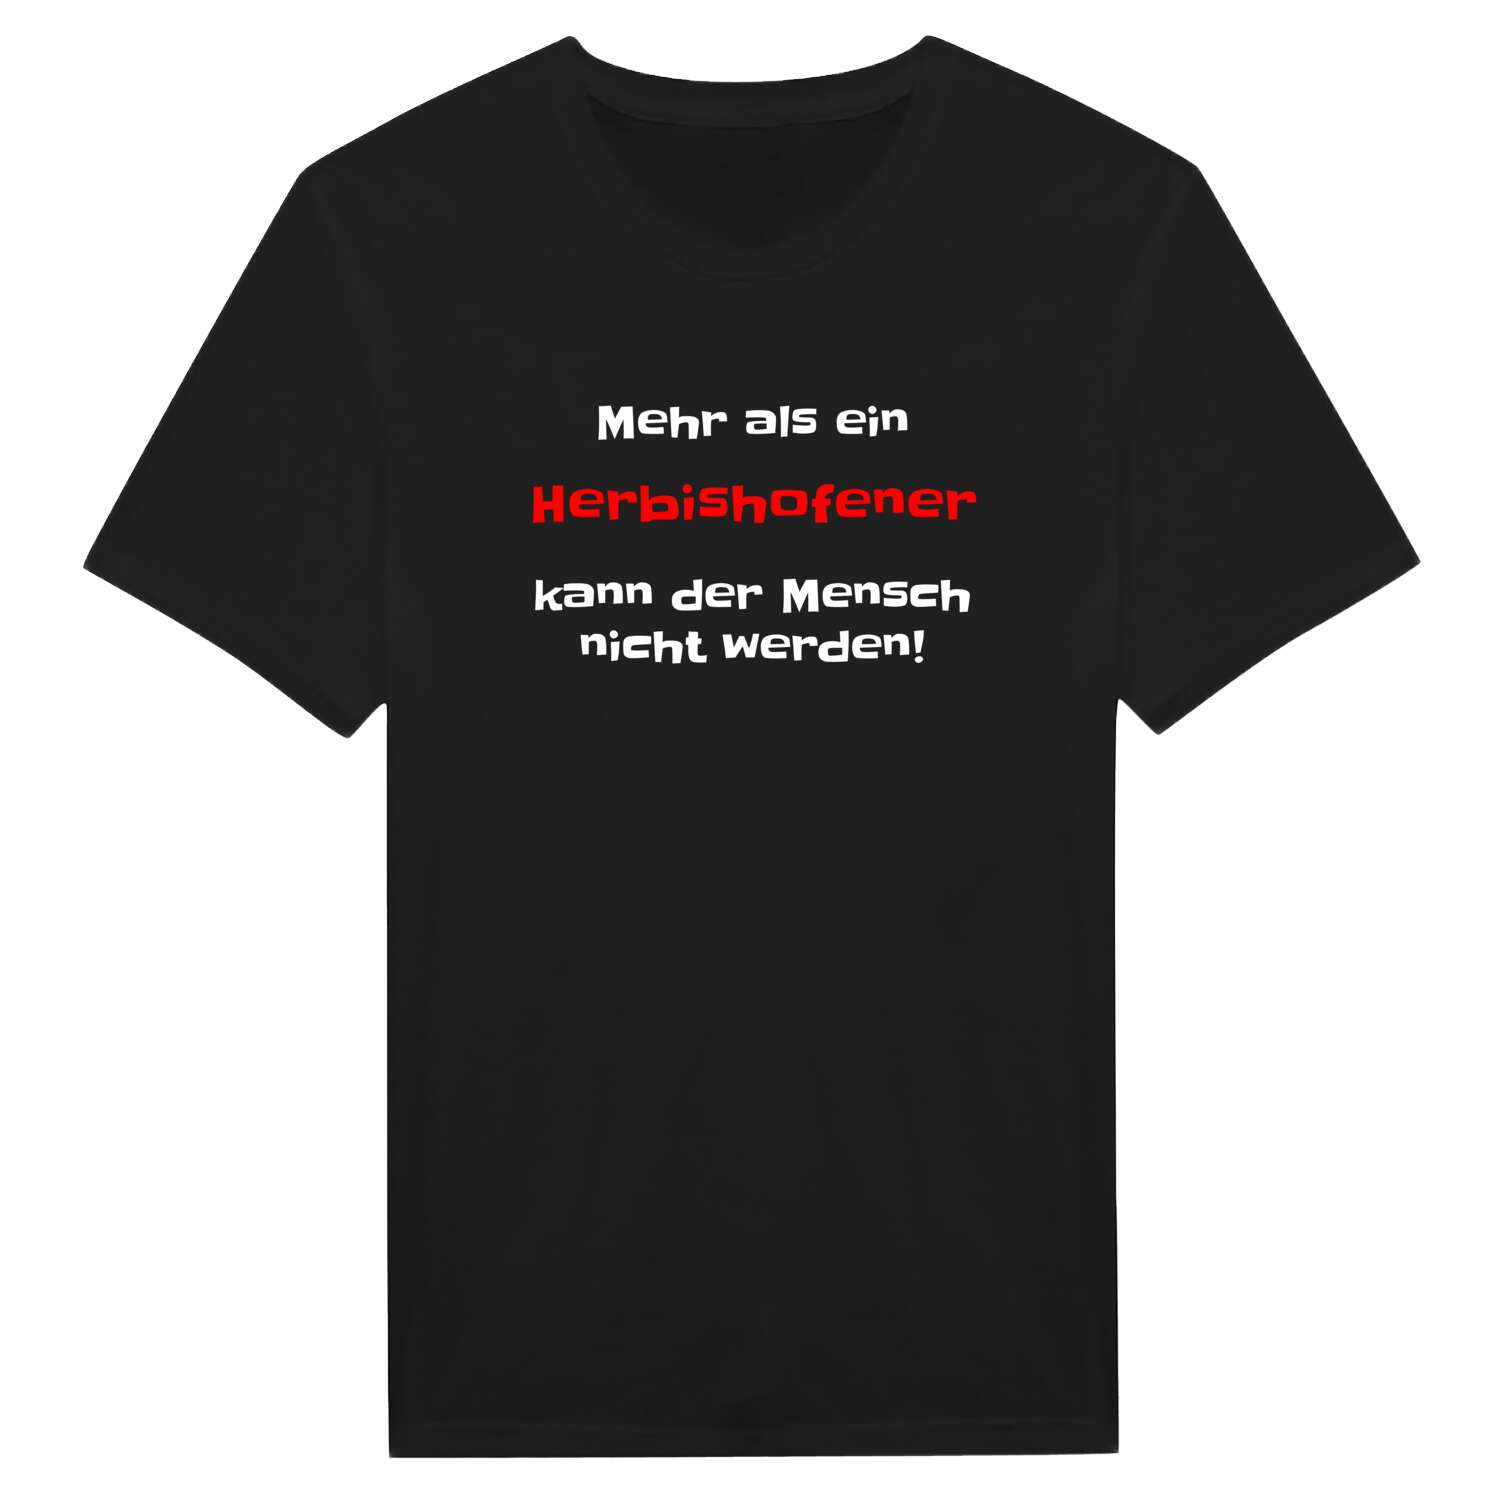 Herbishofen T-Shirt »Mehr als ein«